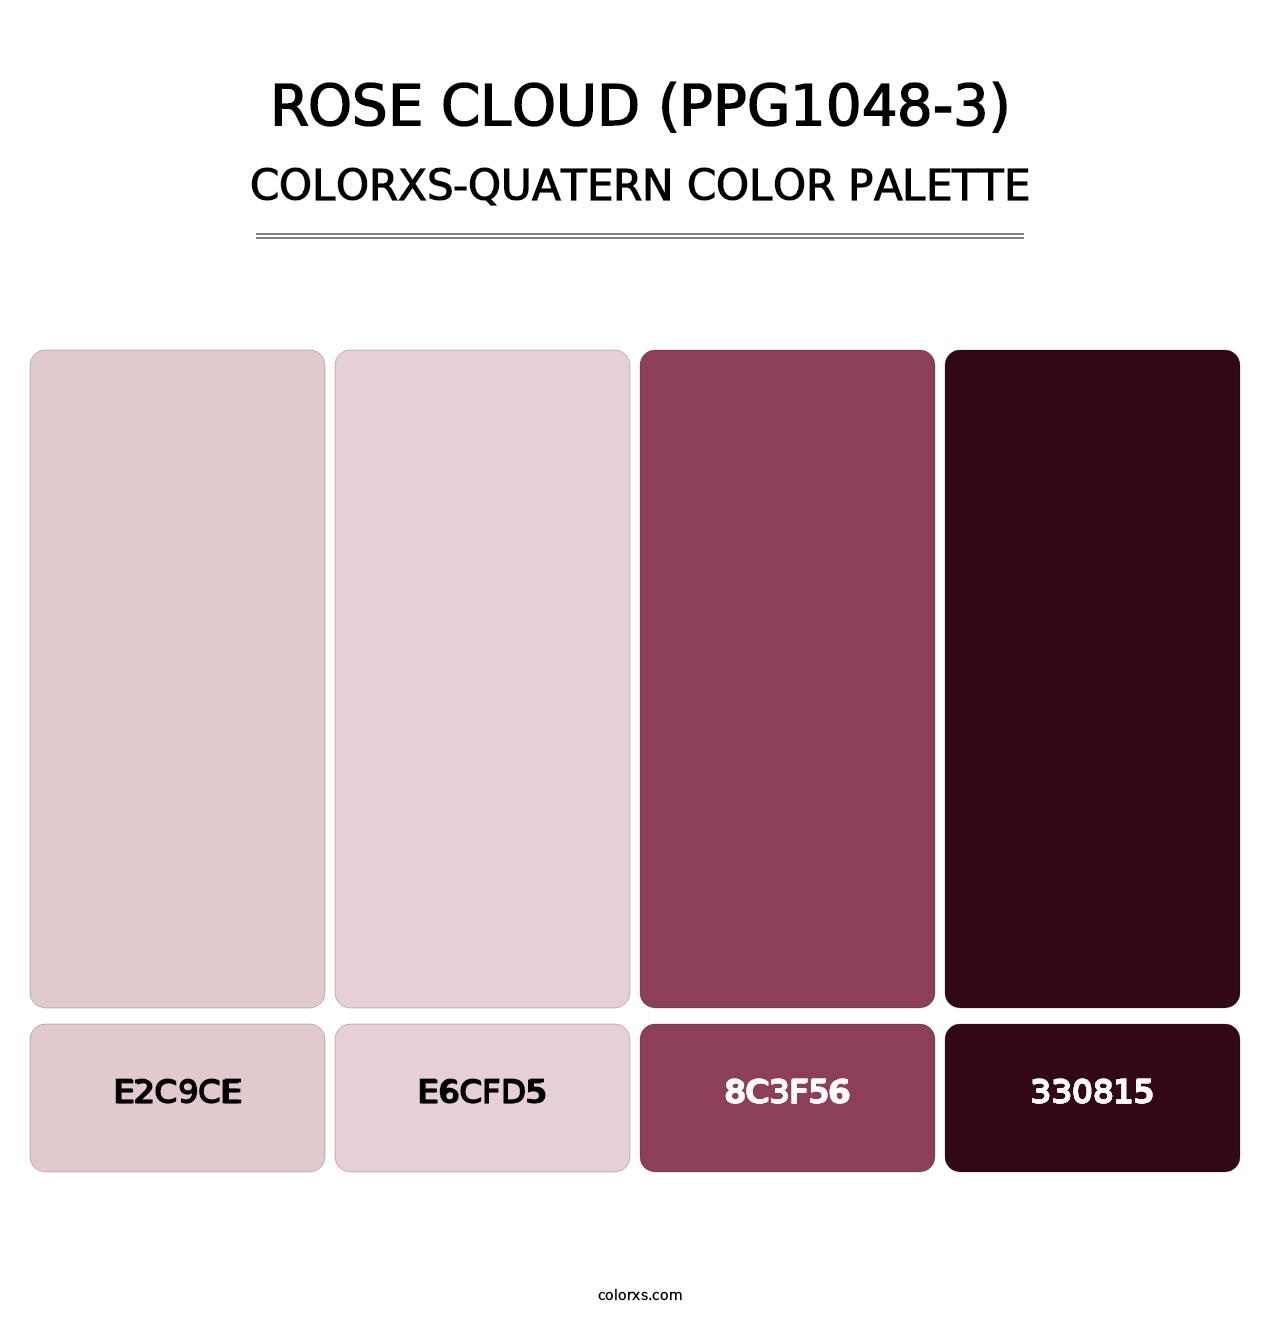 Rose Cloud (PPG1048-3) - Colorxs Quatern Palette